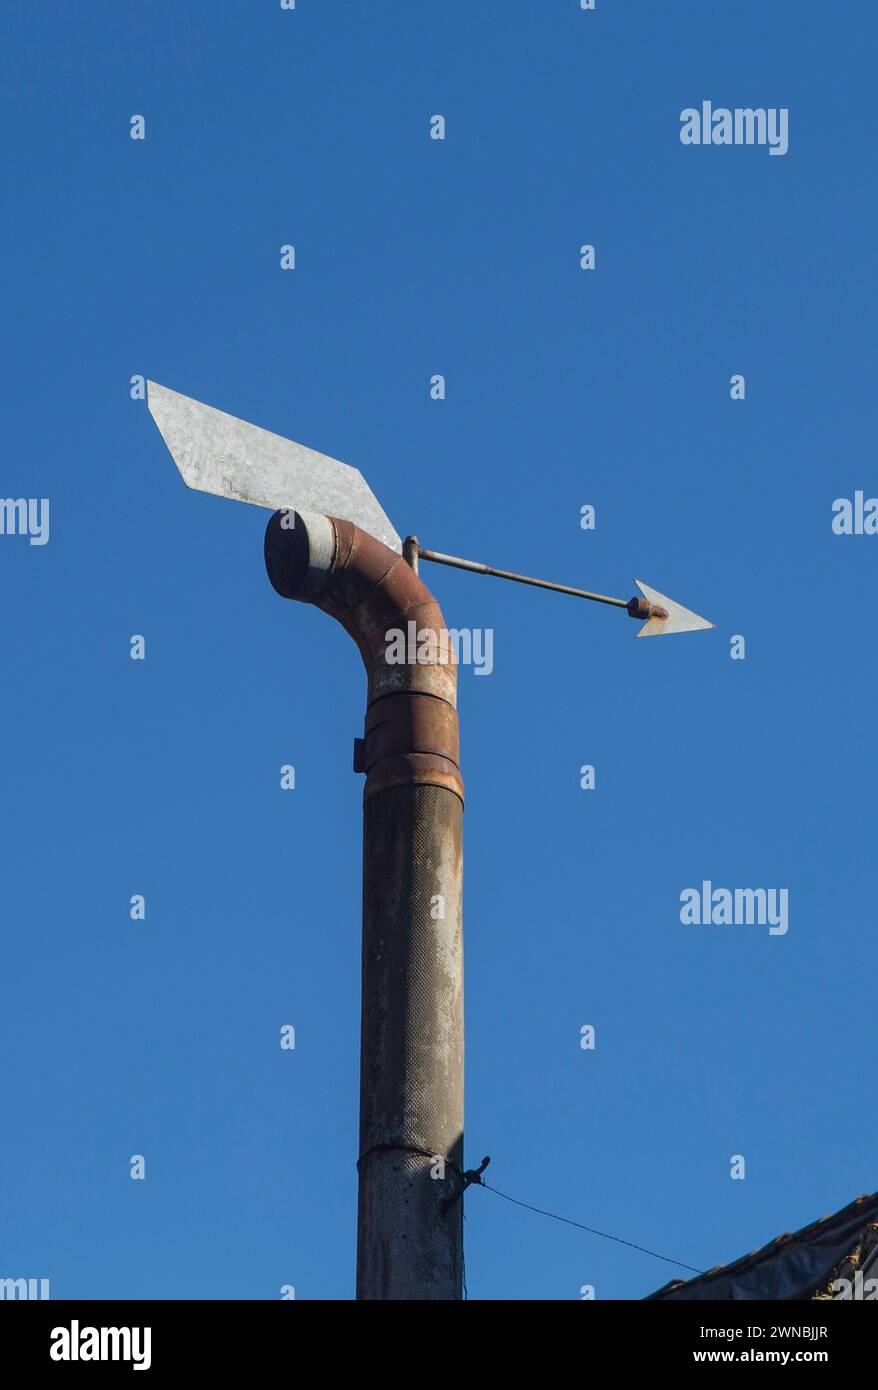 Kaminkappe mit Pfeil für den Inlandswind. Blauer Himmel Hintergrund Stockfoto